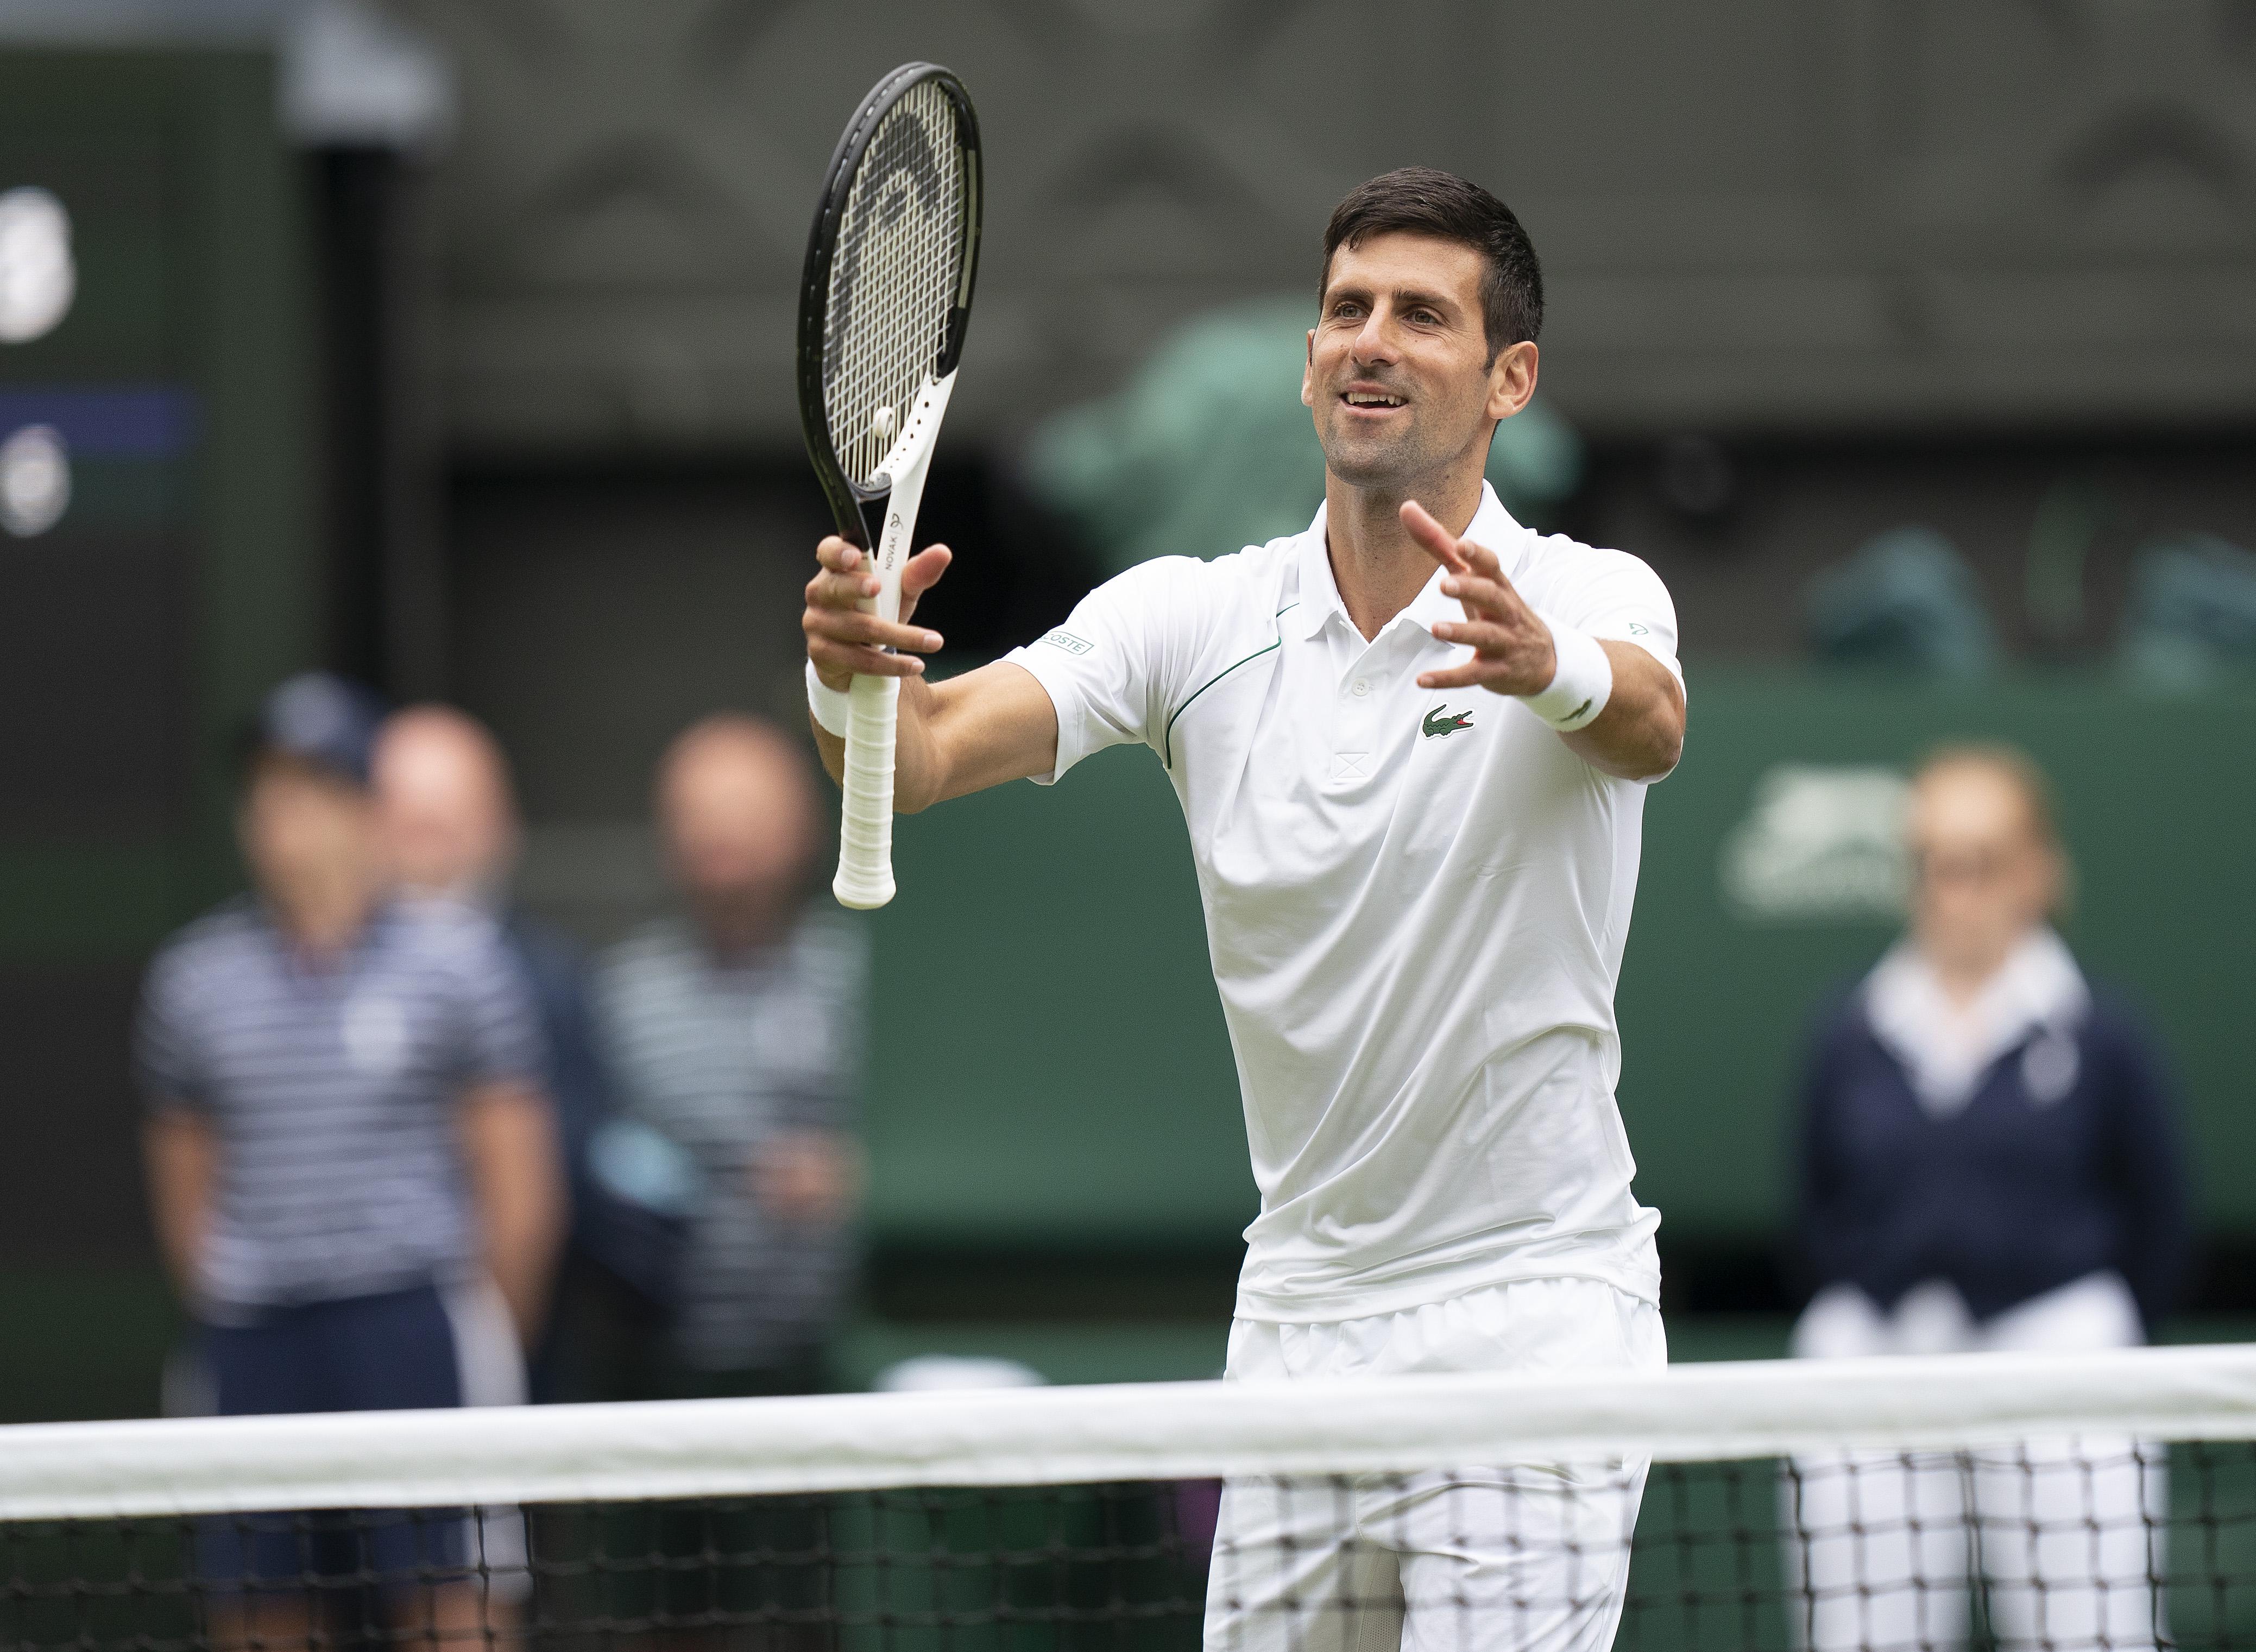 Novak Djokovic vs Jannik Sinner Odds, Prediction and Betting Trends for 2022 Wimbledon Men's Quarterfinal Match